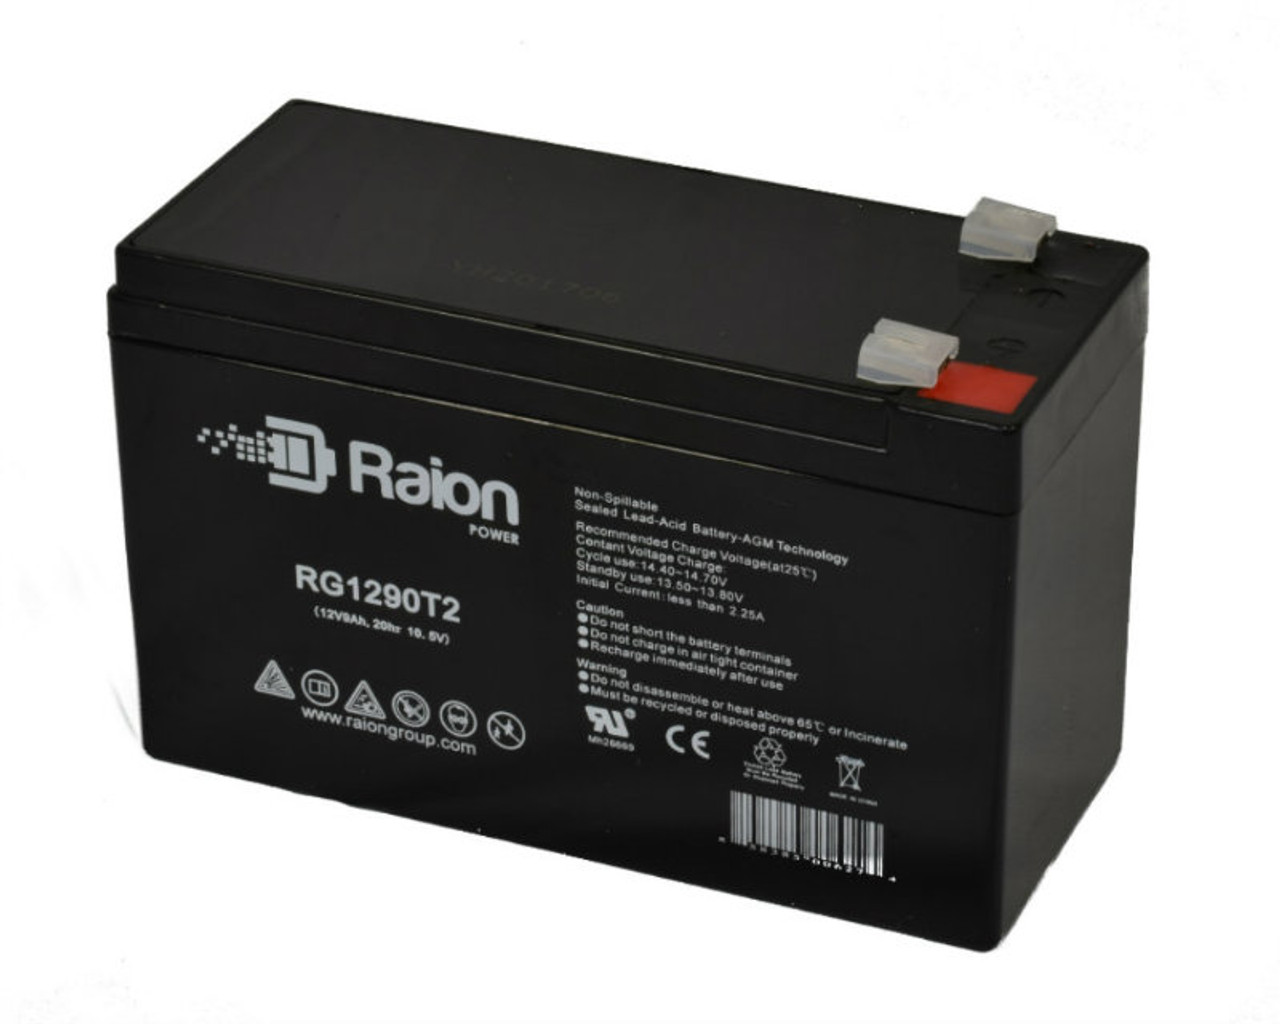 Raion Power RG1290T2 12V 9Ah AGM Battery for Upsonic DS 800